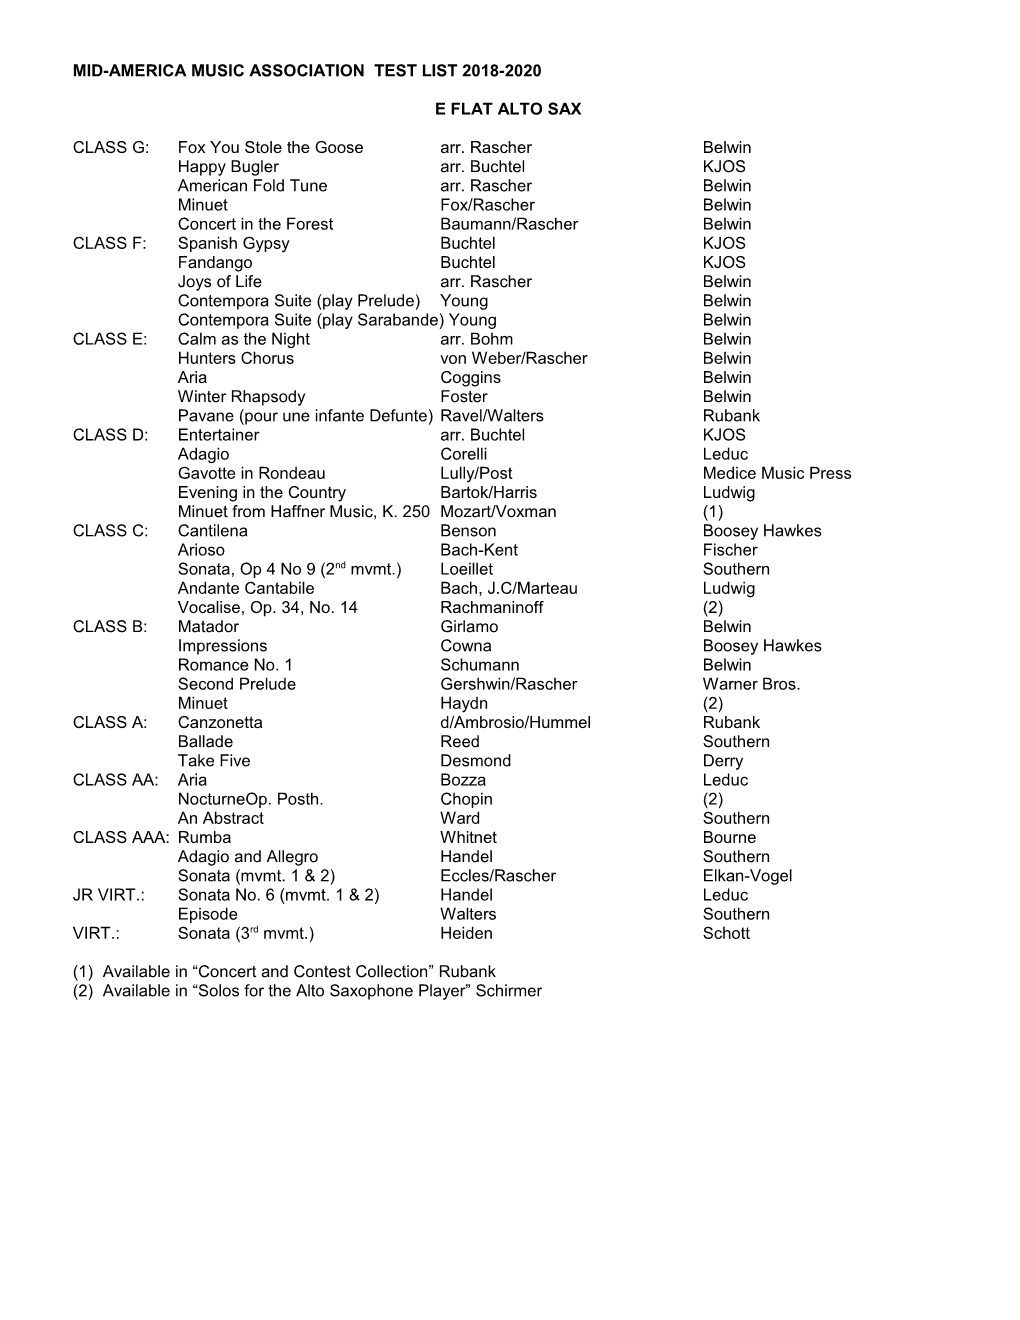 Mid-America Music Association Test List 2006 - 2008